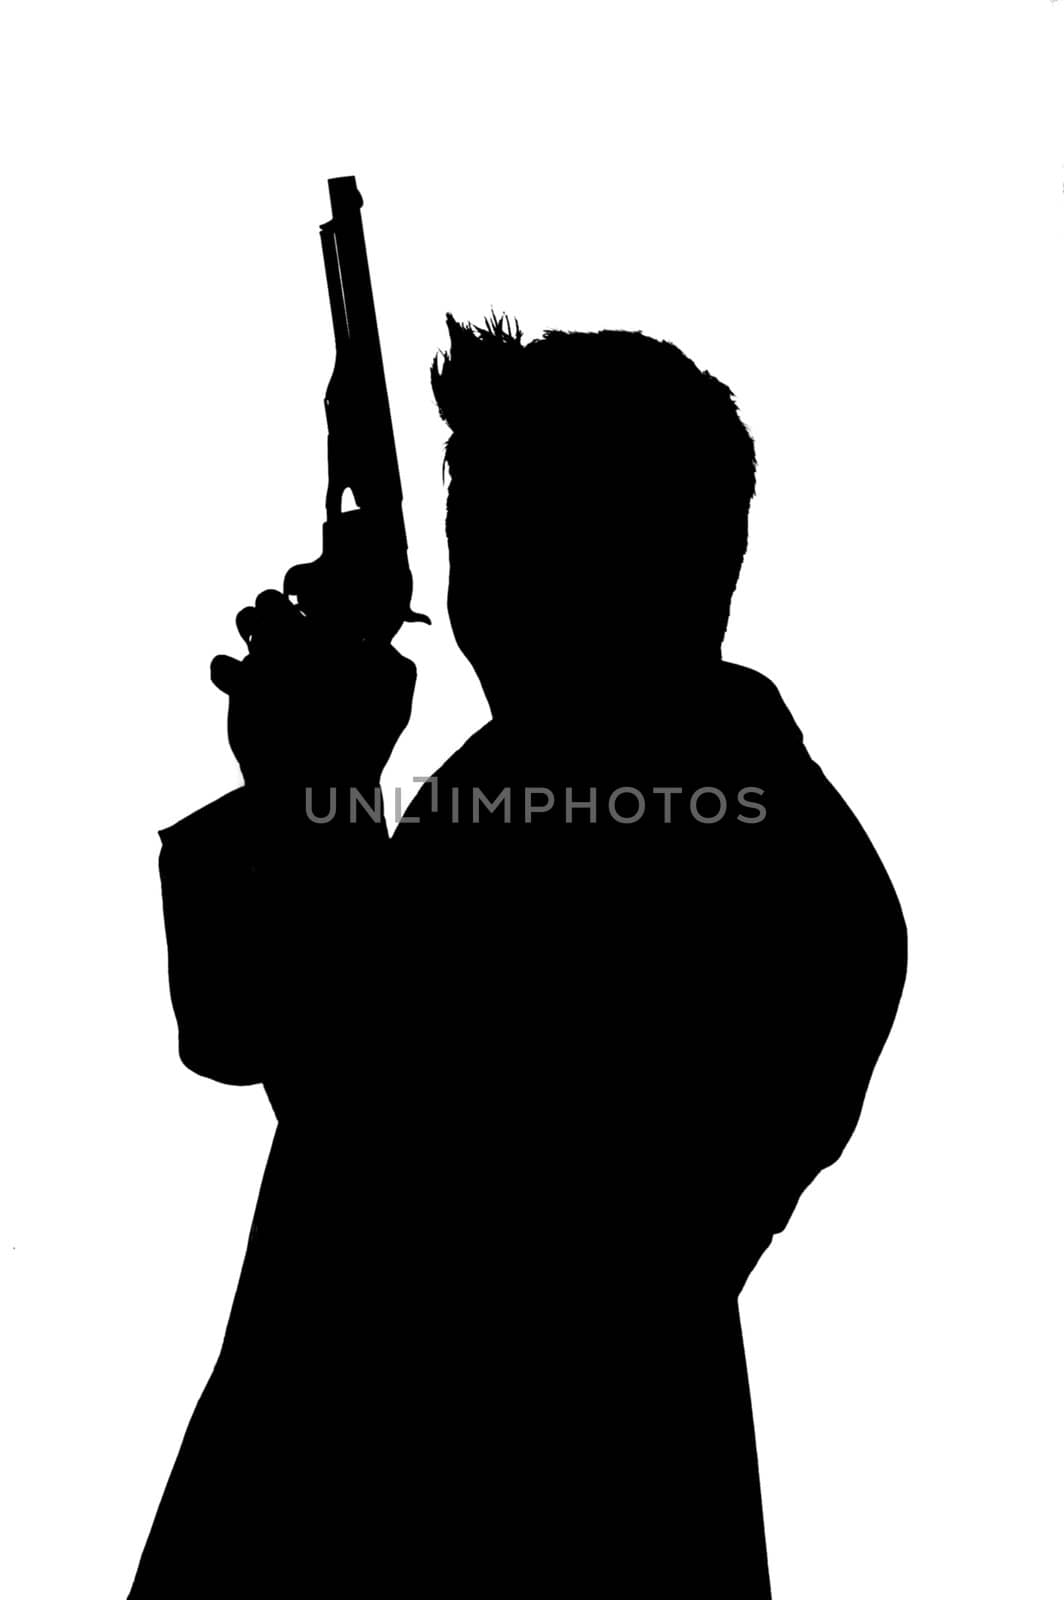 sihouette of gun man